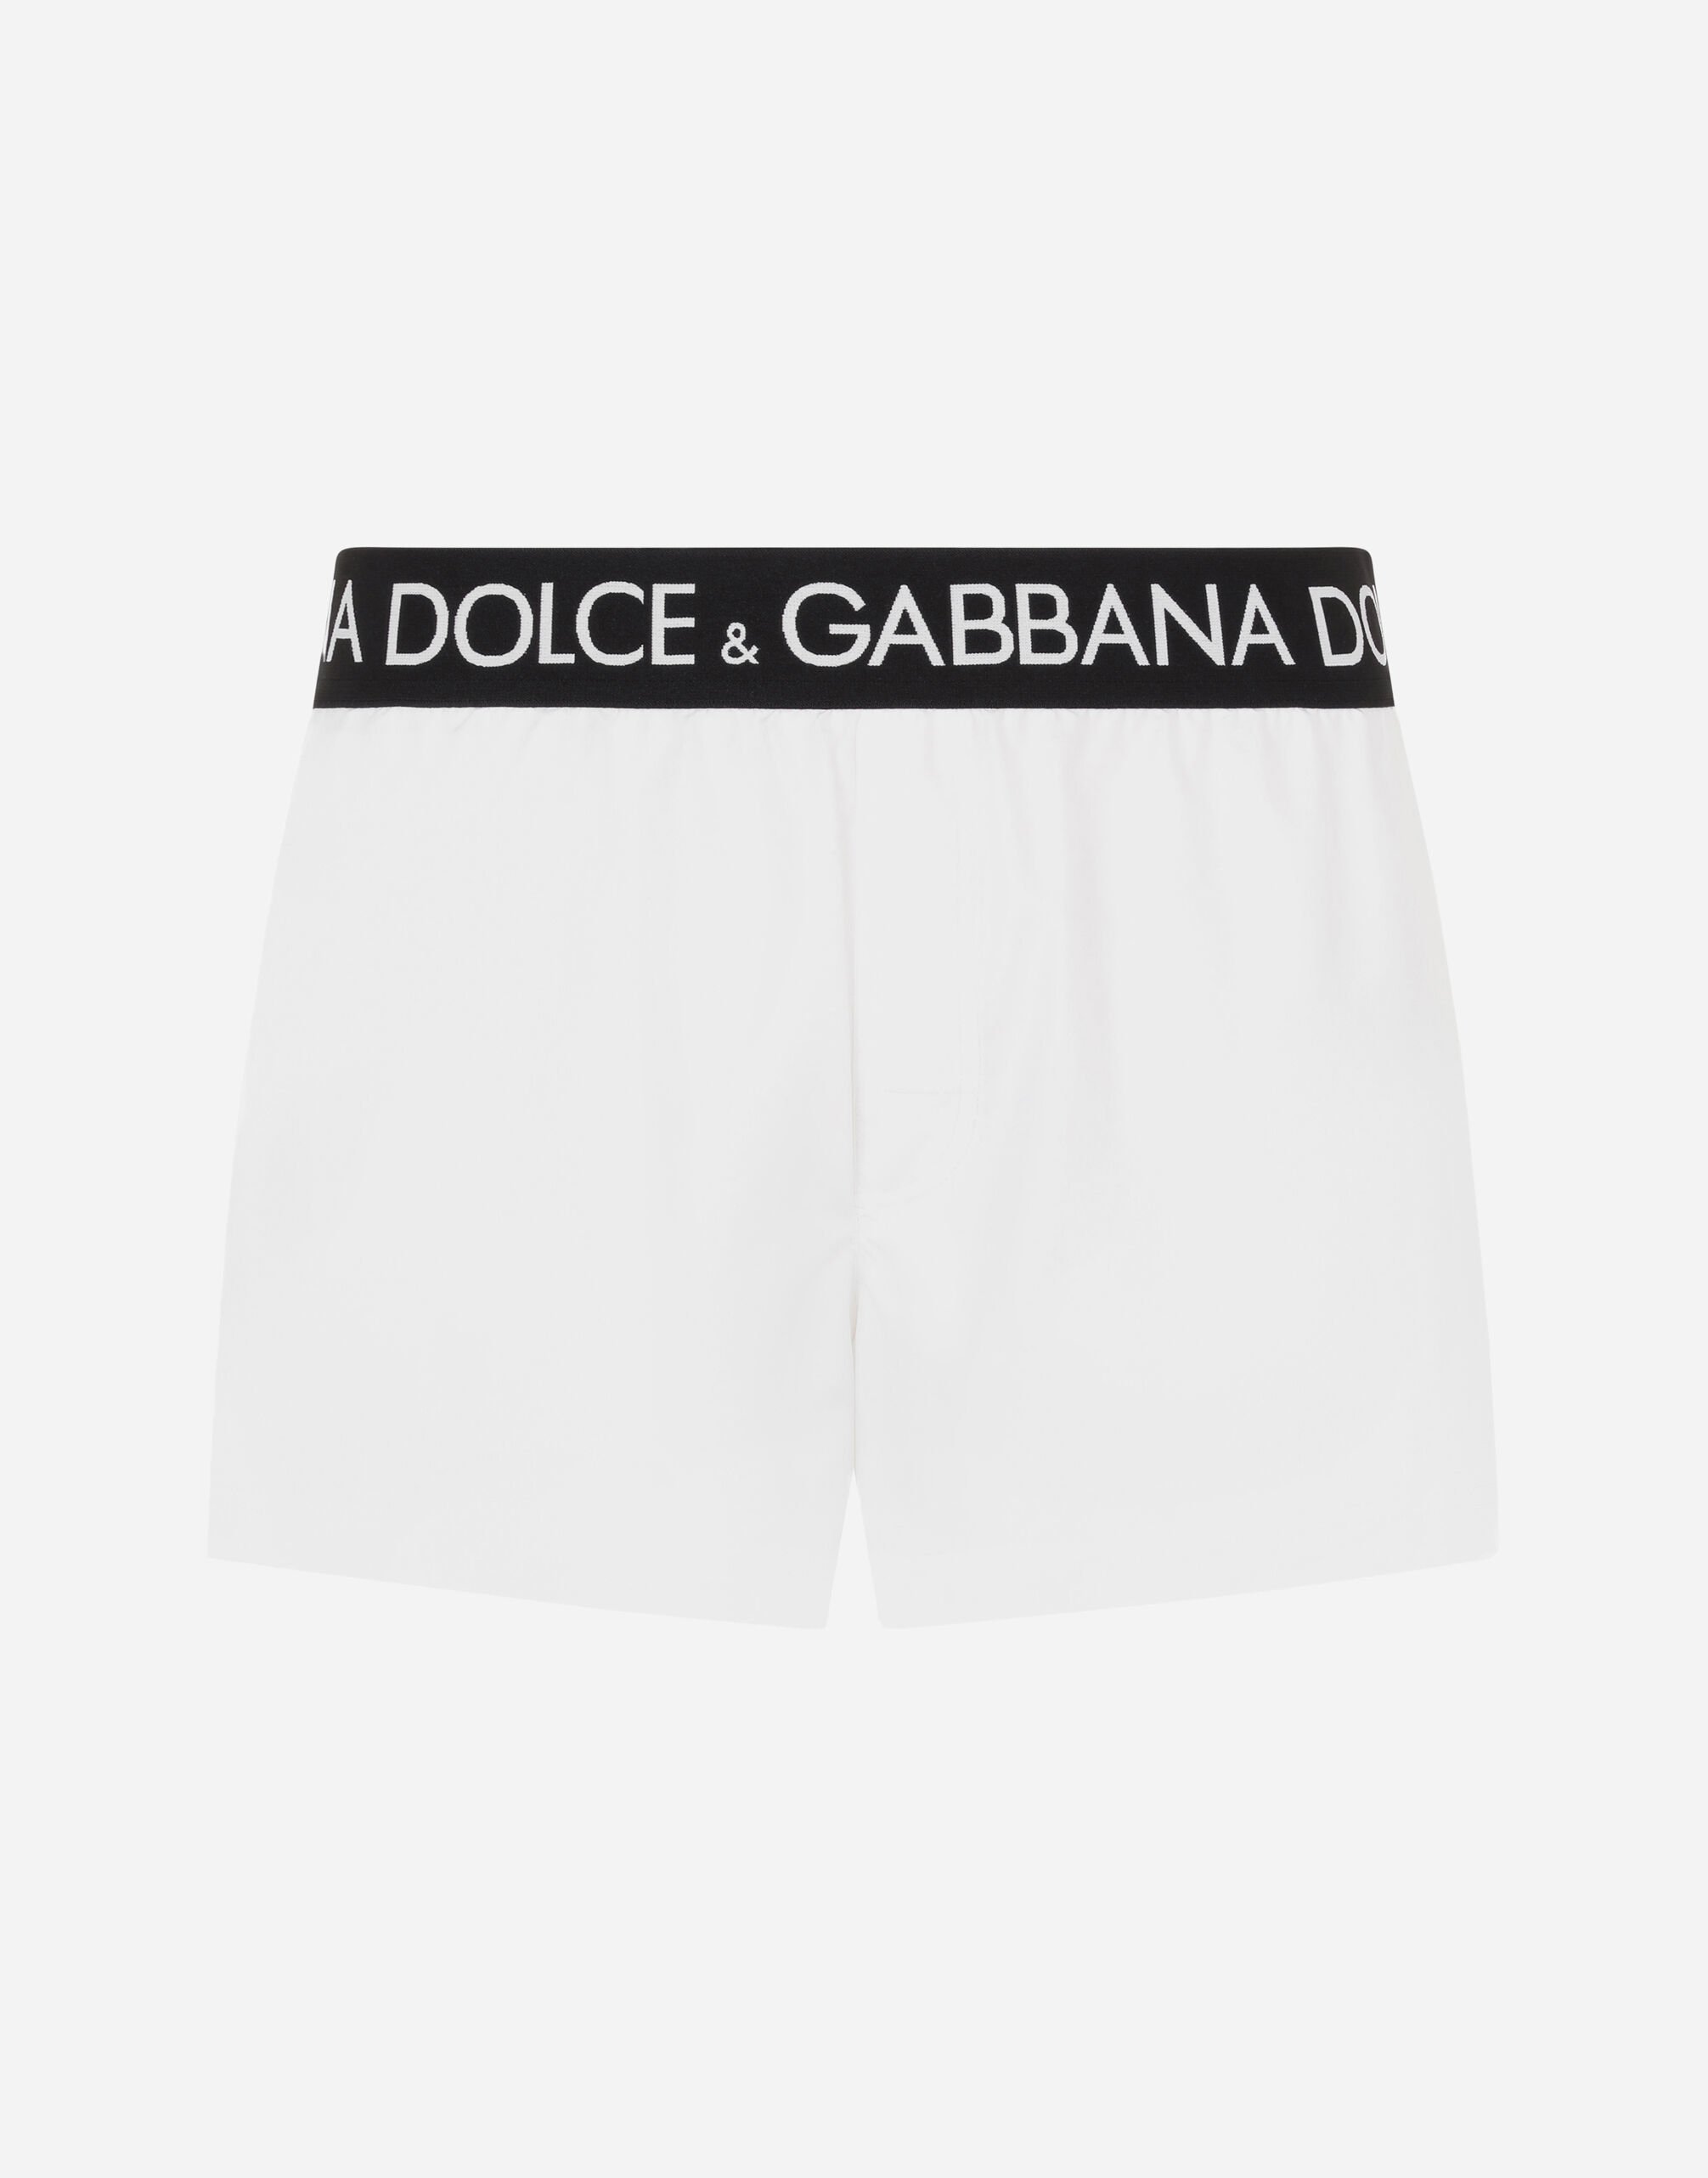 Dolce&Gabbana Short swim trunks with branded stretch waistband Black GY6IETFUFJR